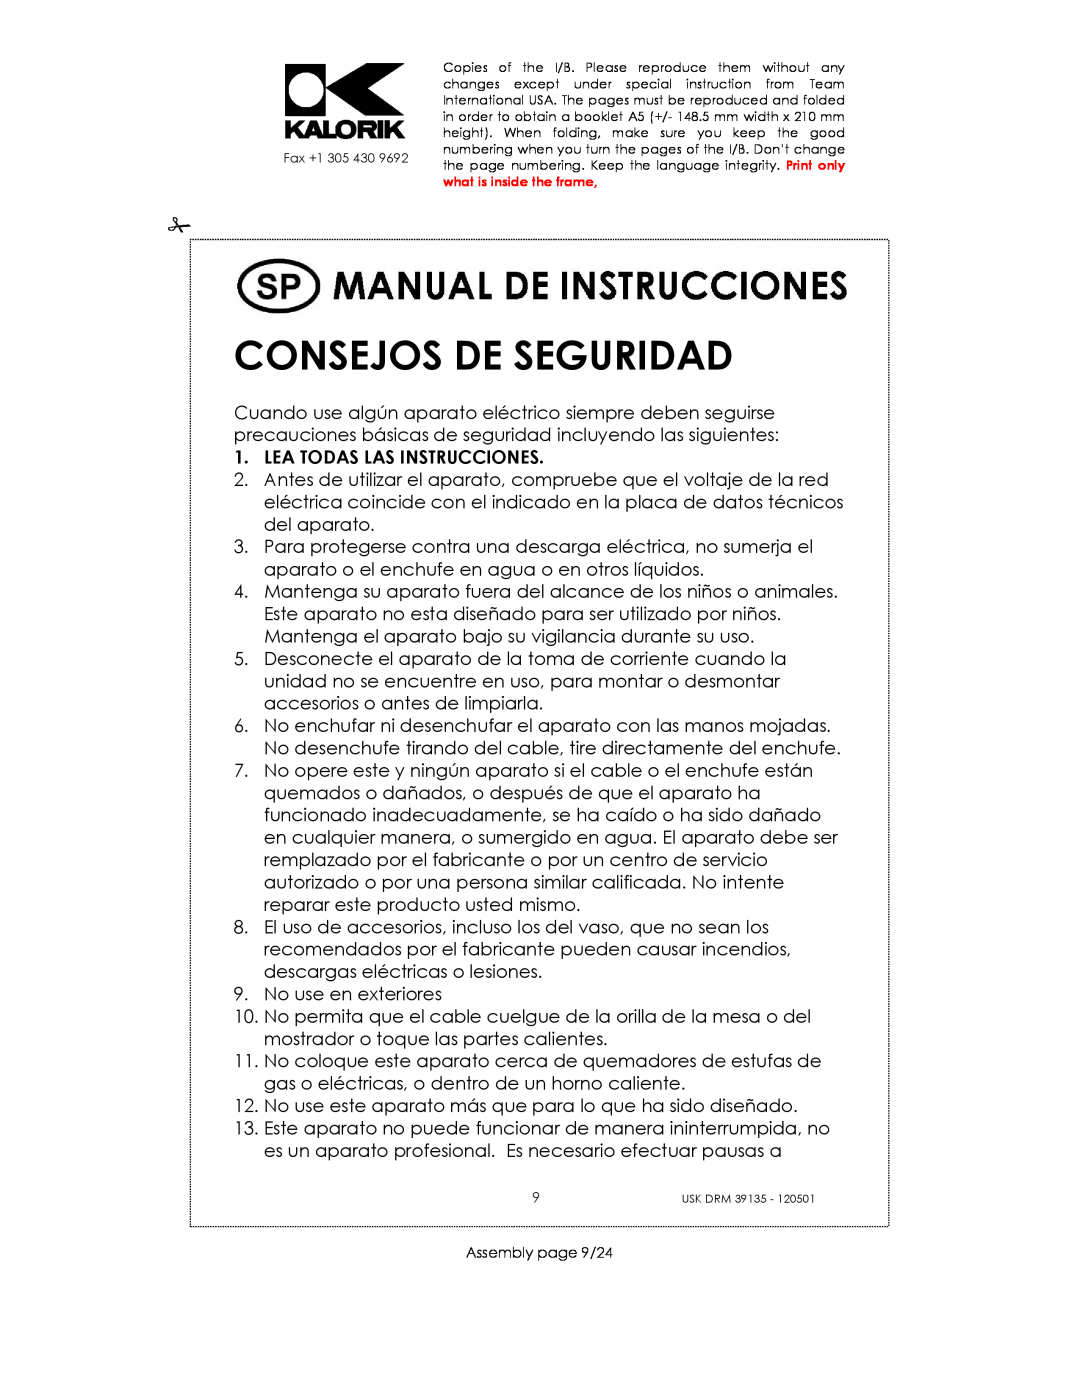 Kalorik USK DRM 39135 manual Consejos De Seguridad, Lea Todas Las Instrucciones 